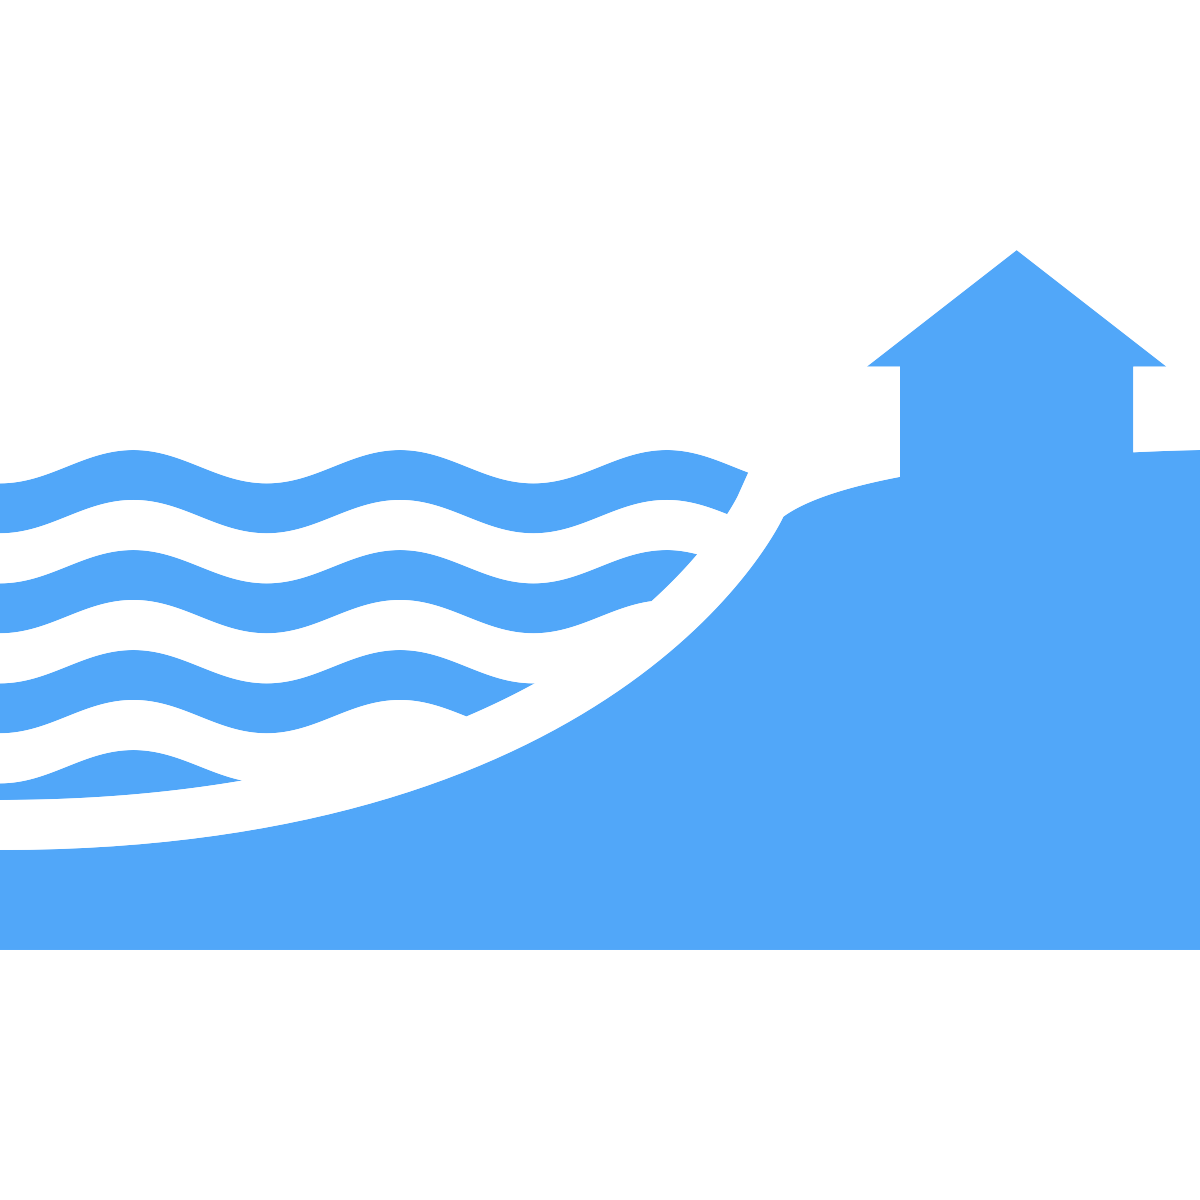 Hazards icon - rising water at a coastline